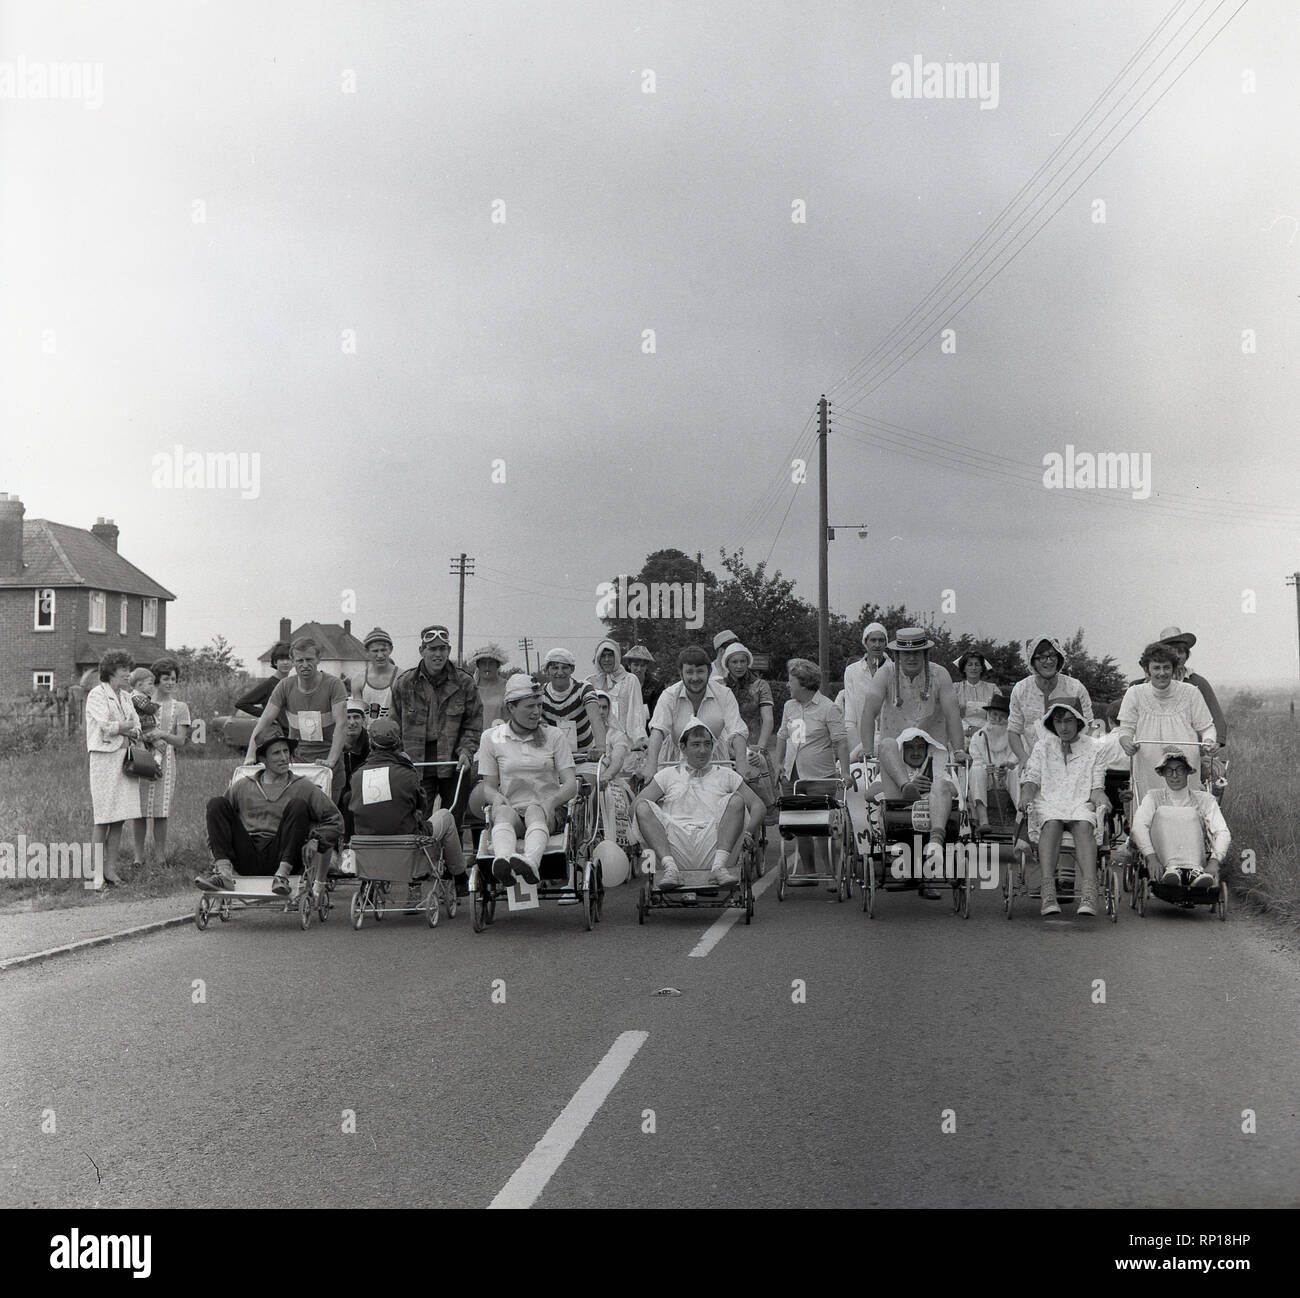 1965, historische, männlichen Konkurrenten in einem englischen Dorf pram Rennen, das Tragen von Fancy Dress oder Kostüme, Line-up mit ihren Fahrgästen und Kinderwagen auf der Landstraße für den Beginn der Veranstaltung, England, UK. Stockfoto